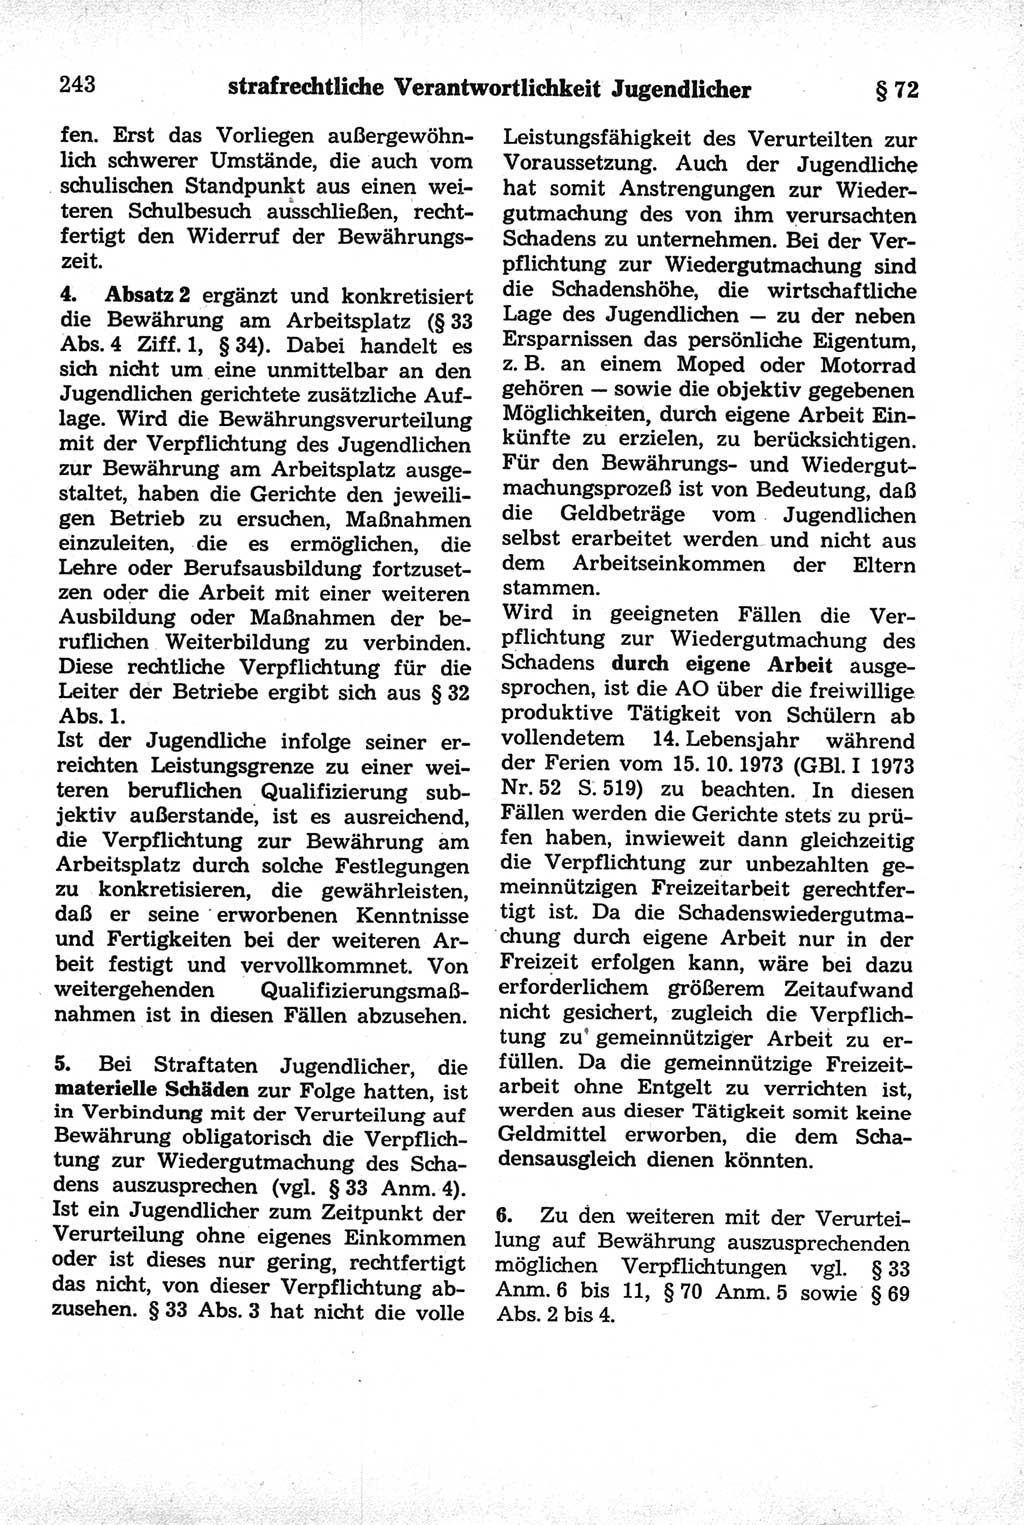 Strafrecht der Deutschen Demokratischen Republik (DDR), Kommentar zum Strafgesetzbuch (StGB) 1981, Seite 243 (Strafr. DDR Komm. StGB 1981, S. 243)